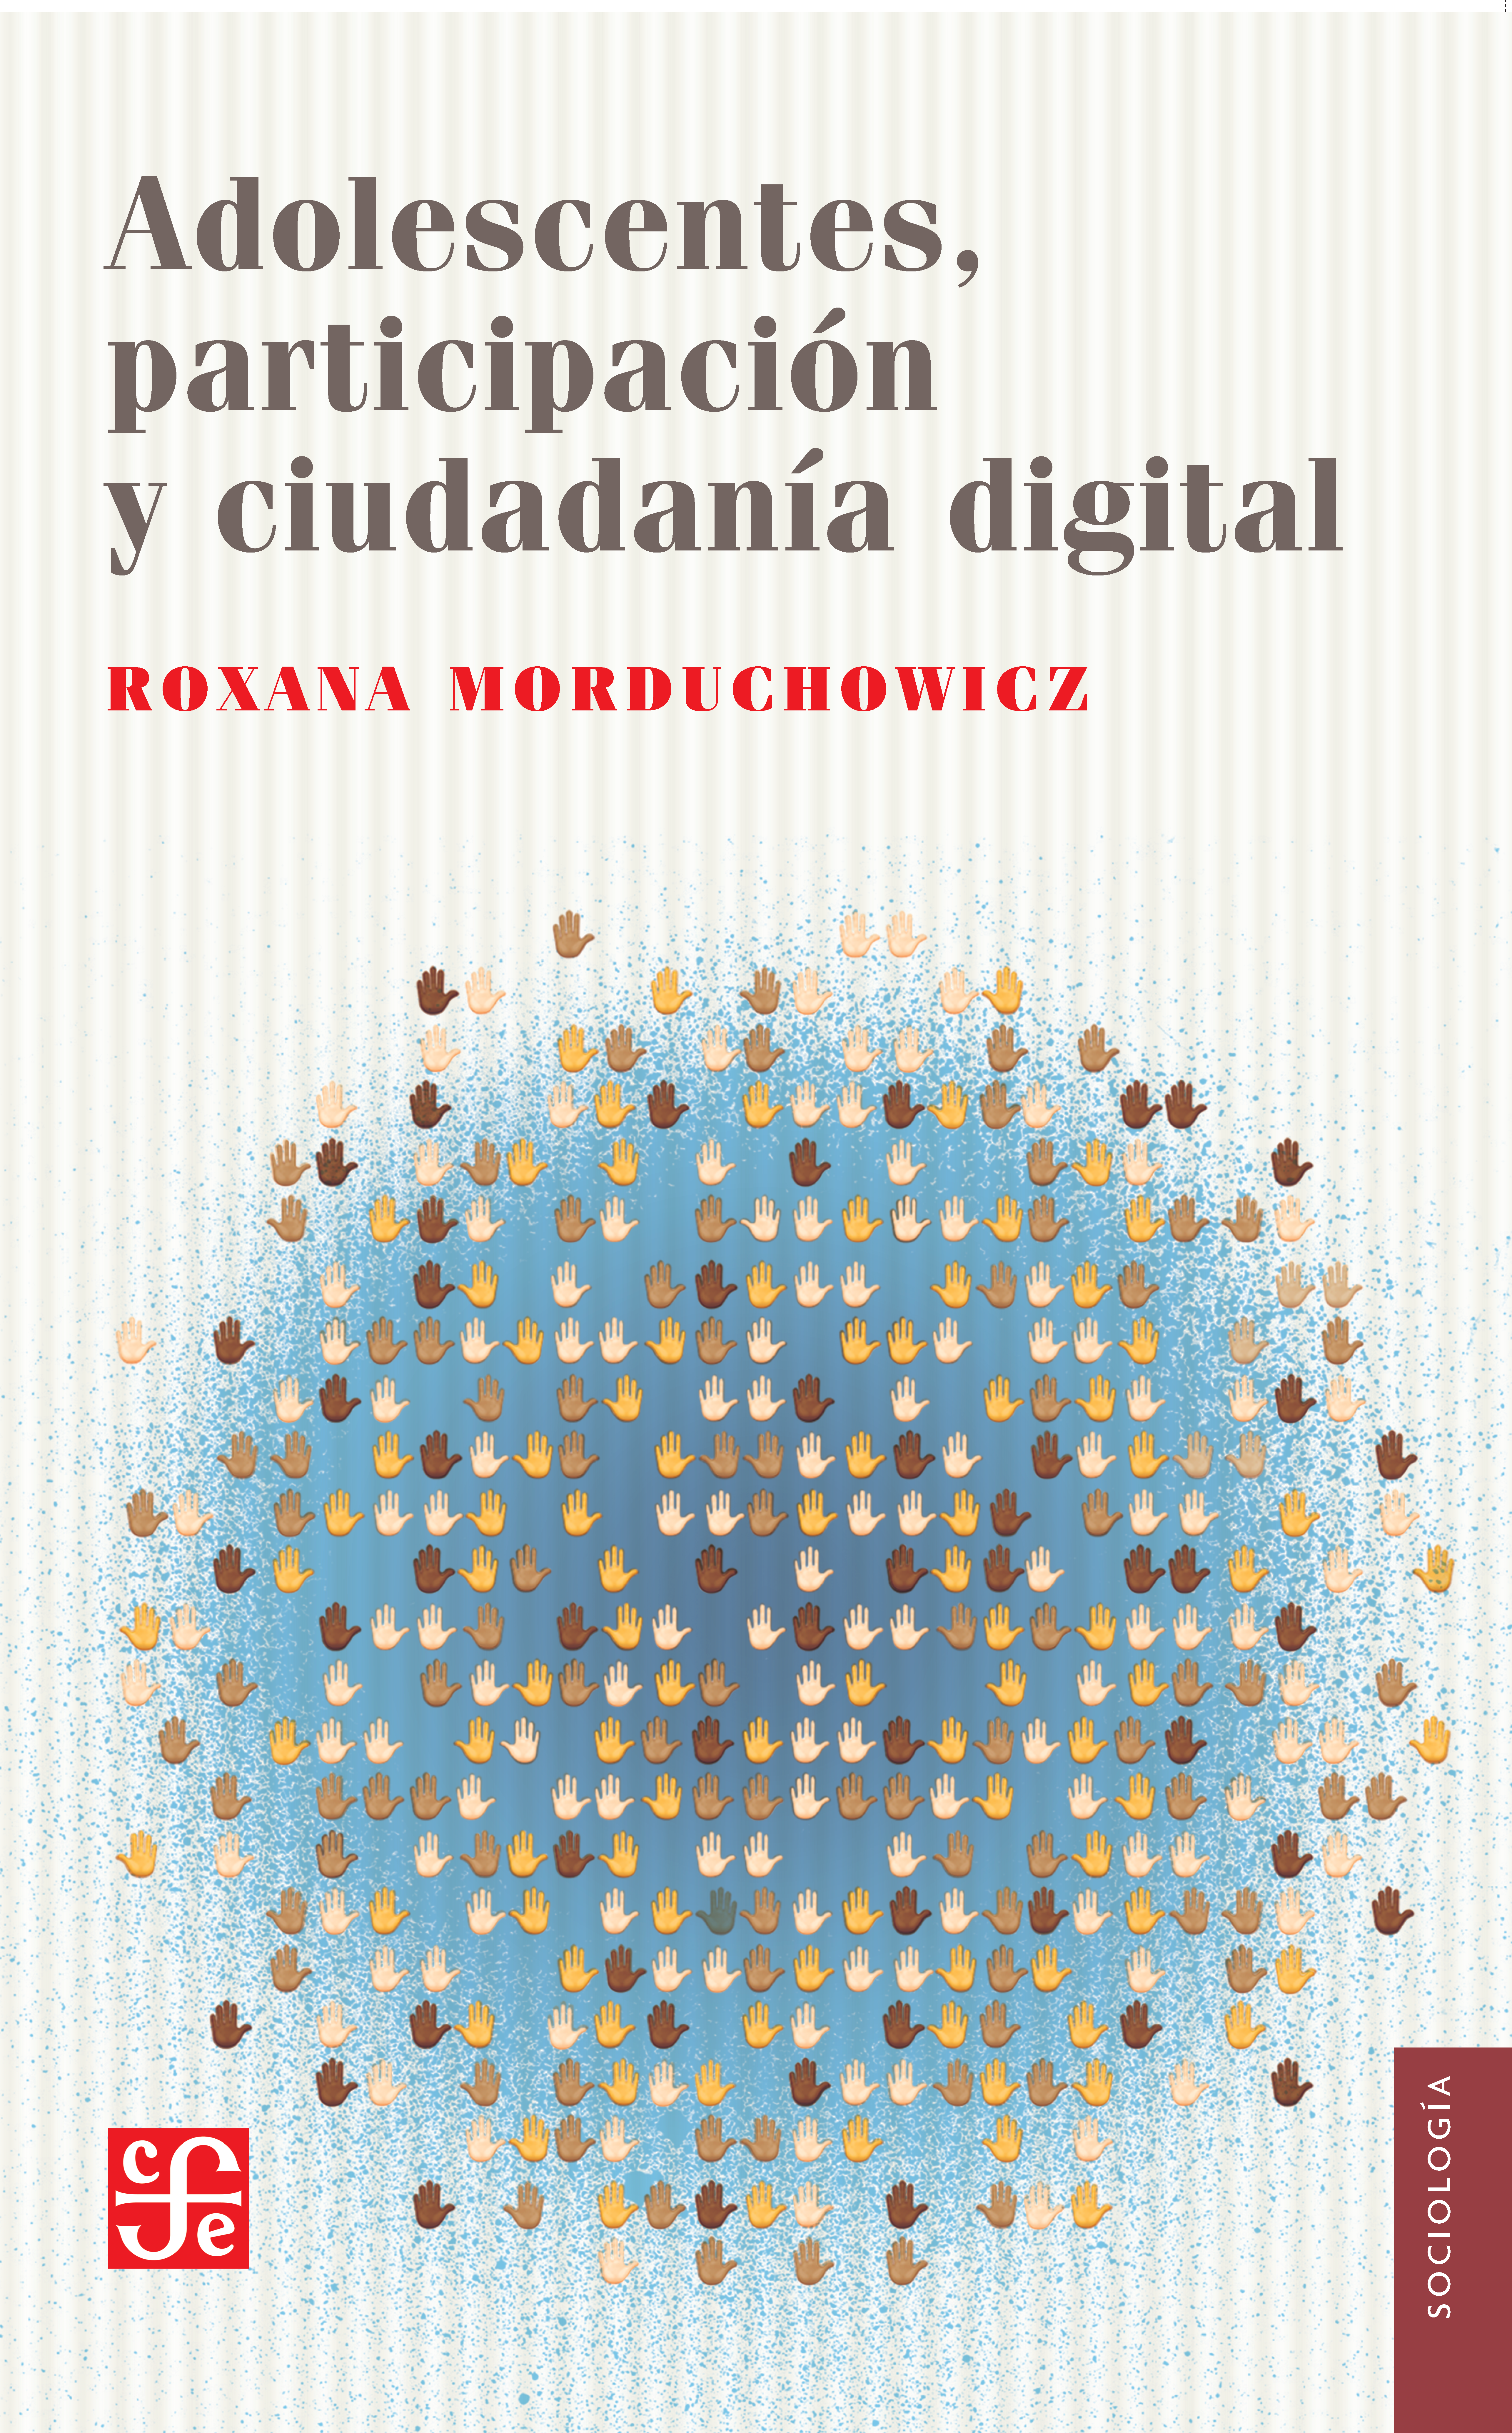 Tapa del libro "Adolescentes, participación y ciudadanía digital" 